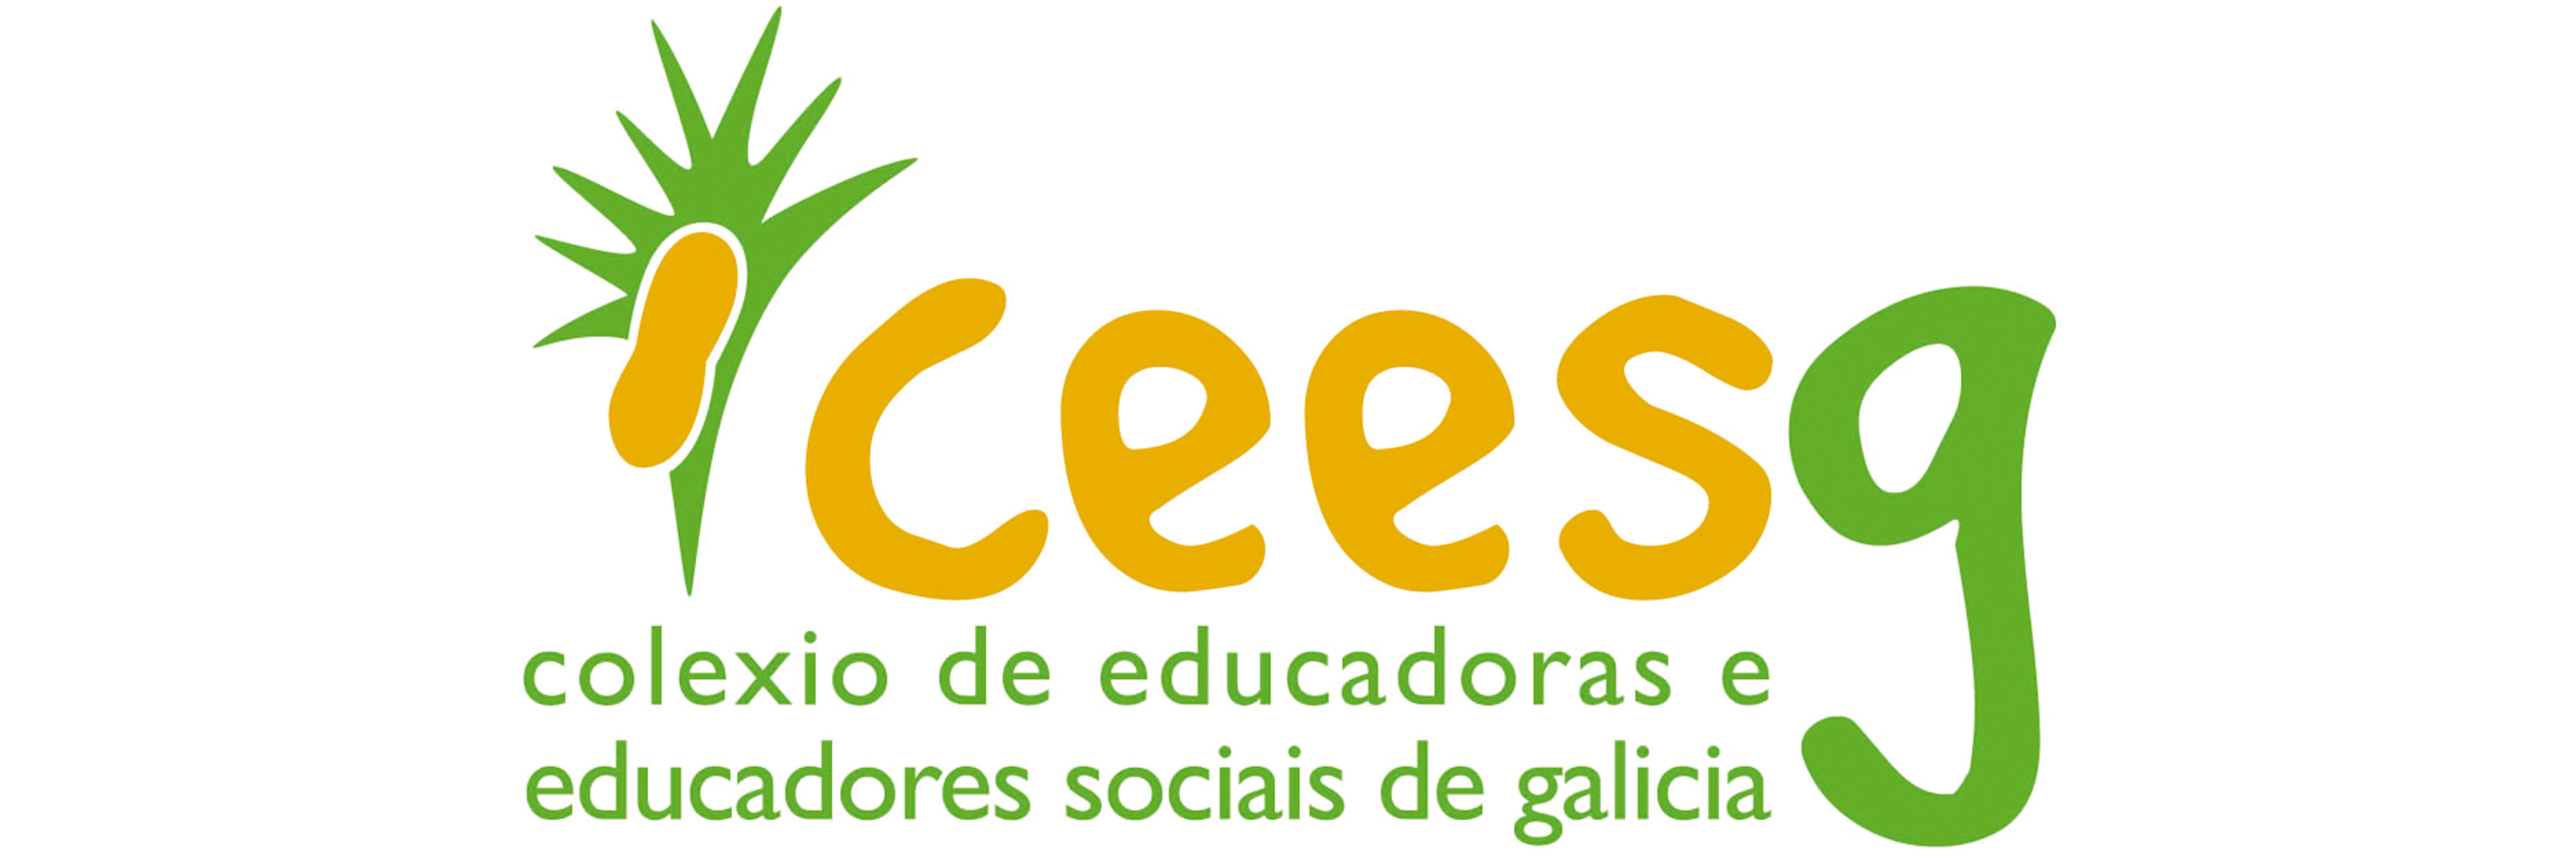 logo Ceesg